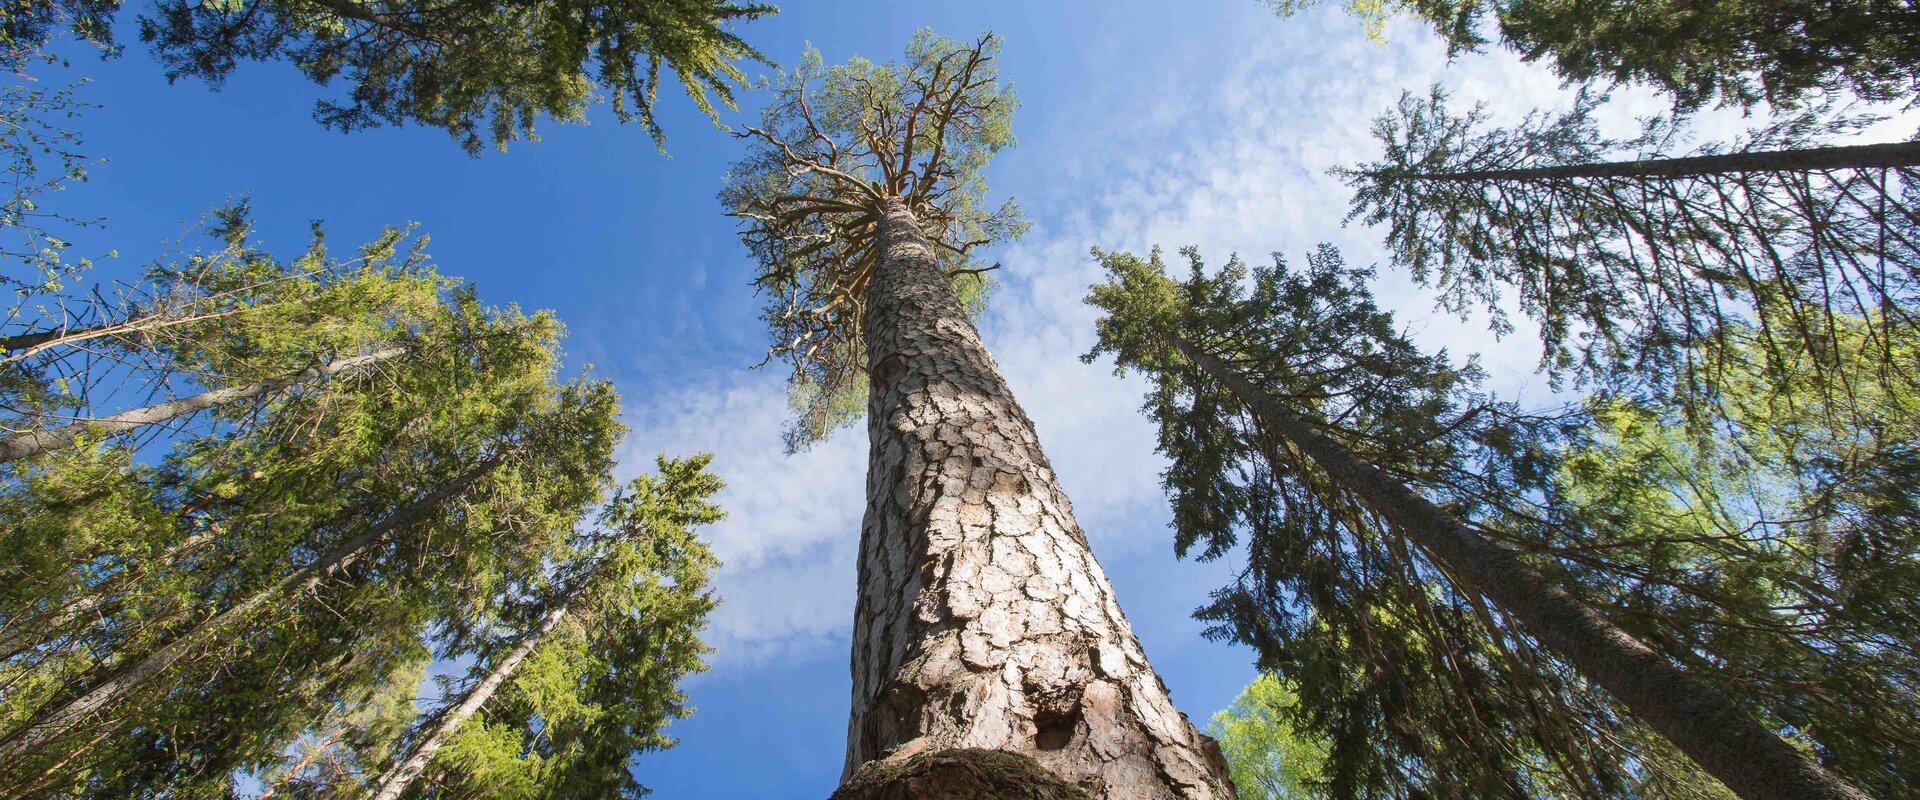 Karaliskā priede ir viens no Igaunijas vecākajiem un lielākajiem kokiem